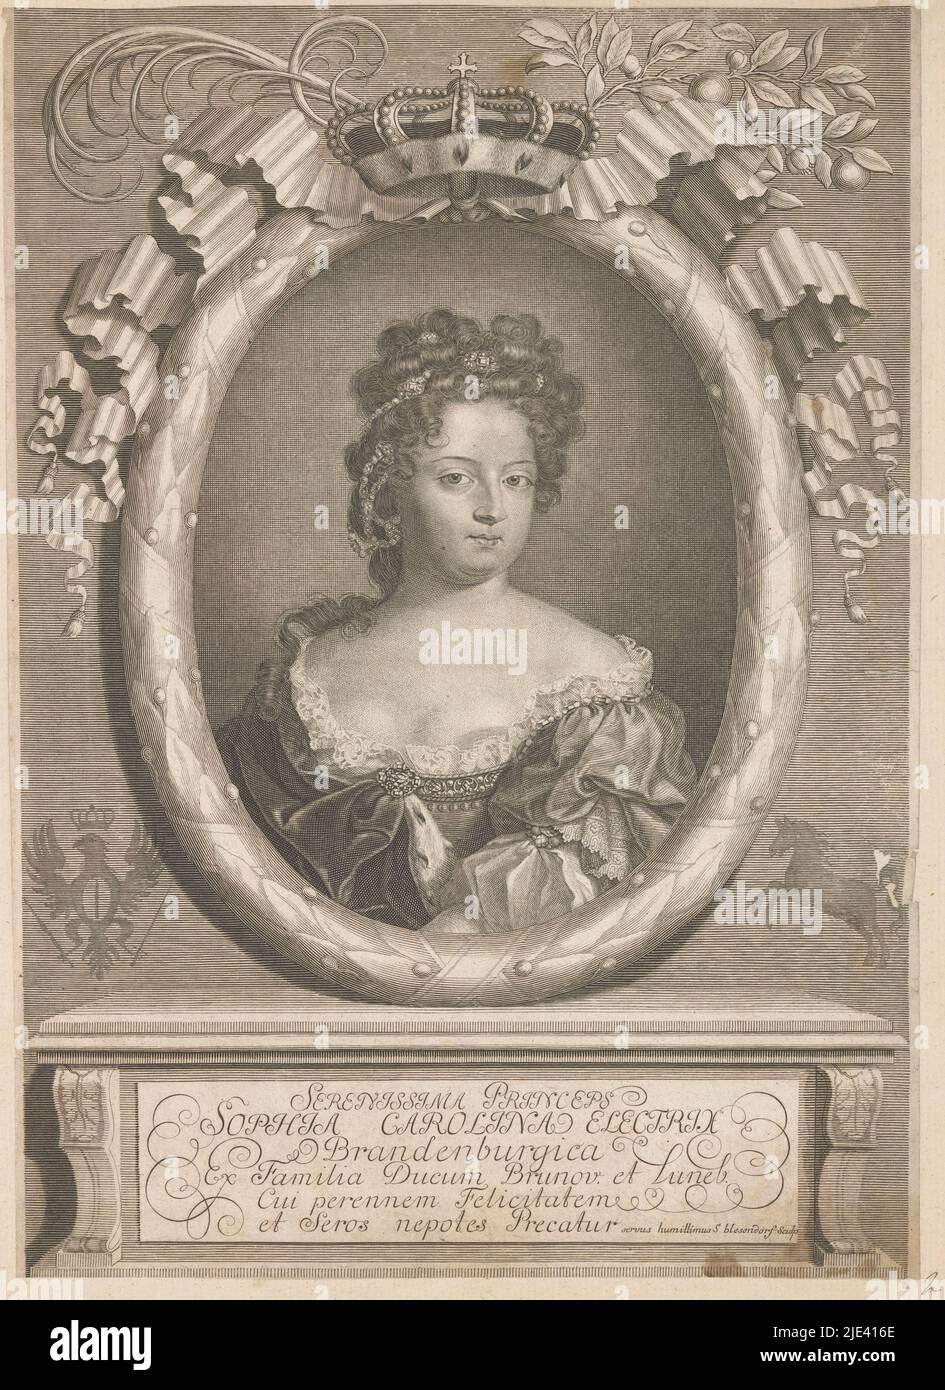 Retrato de Sophia Charlotte, Reina de Prusia, como Electress de Brandeburgo, Samuel Blesendorf, 1688 - 1701, imprenta: Samuel Blesendorf, (mencionado en el objeto), Berlín, 1688 - 1701, papel, grabado de 330 mm de alto x 235 mm de ancho Foto de stock